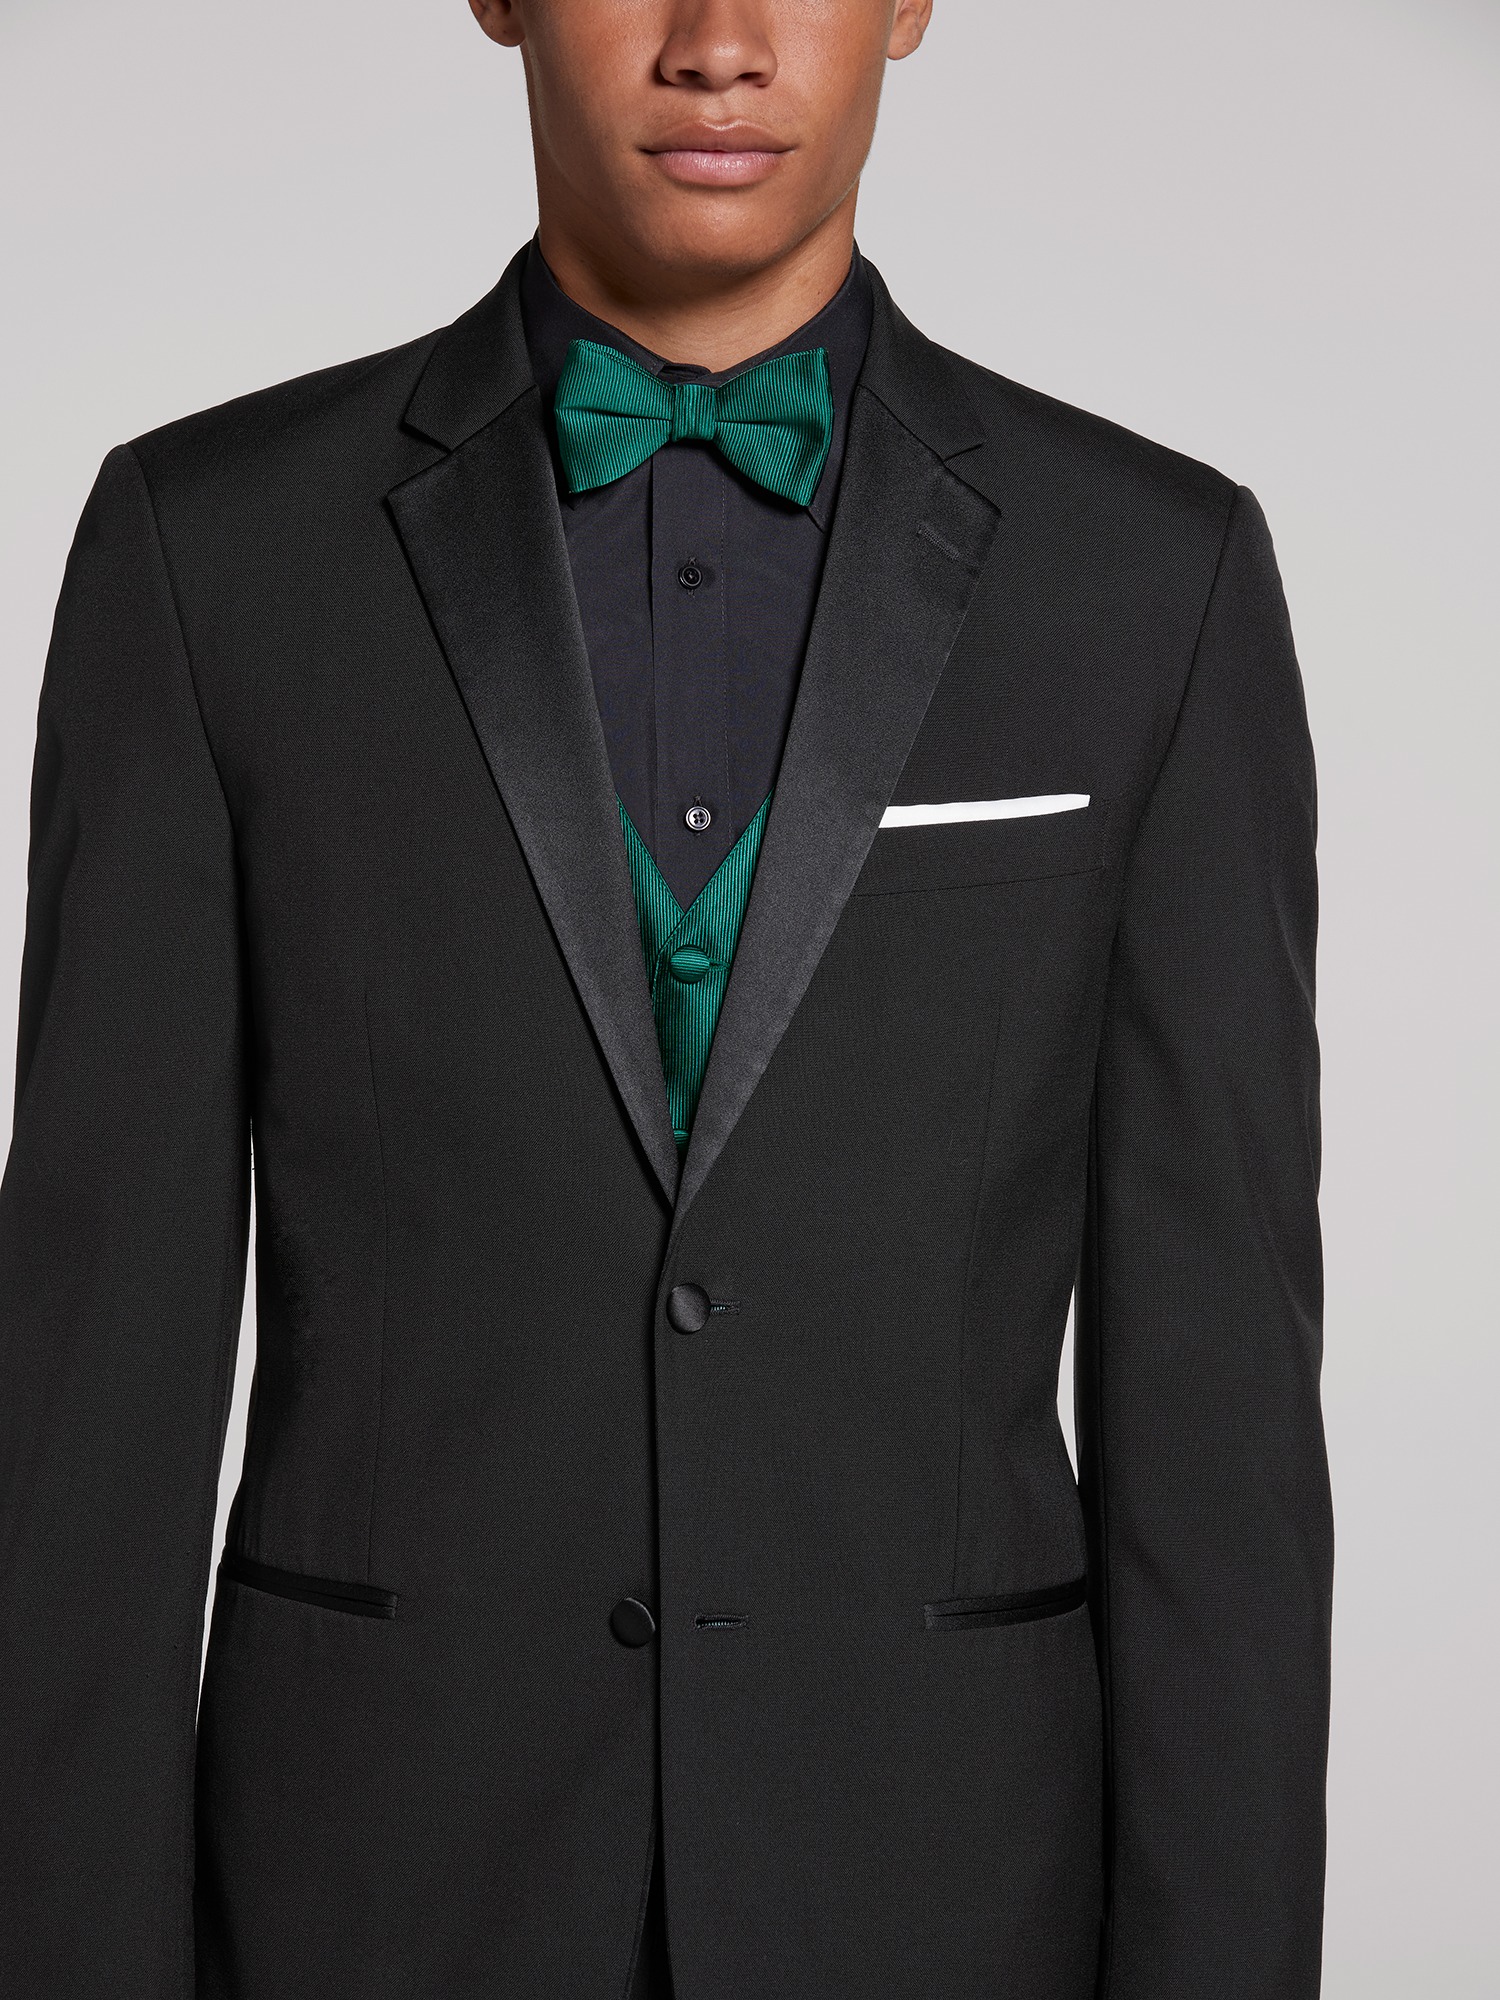 Black Slim Fit 2-Button Notch Business Suit | Louie's Tux Shop